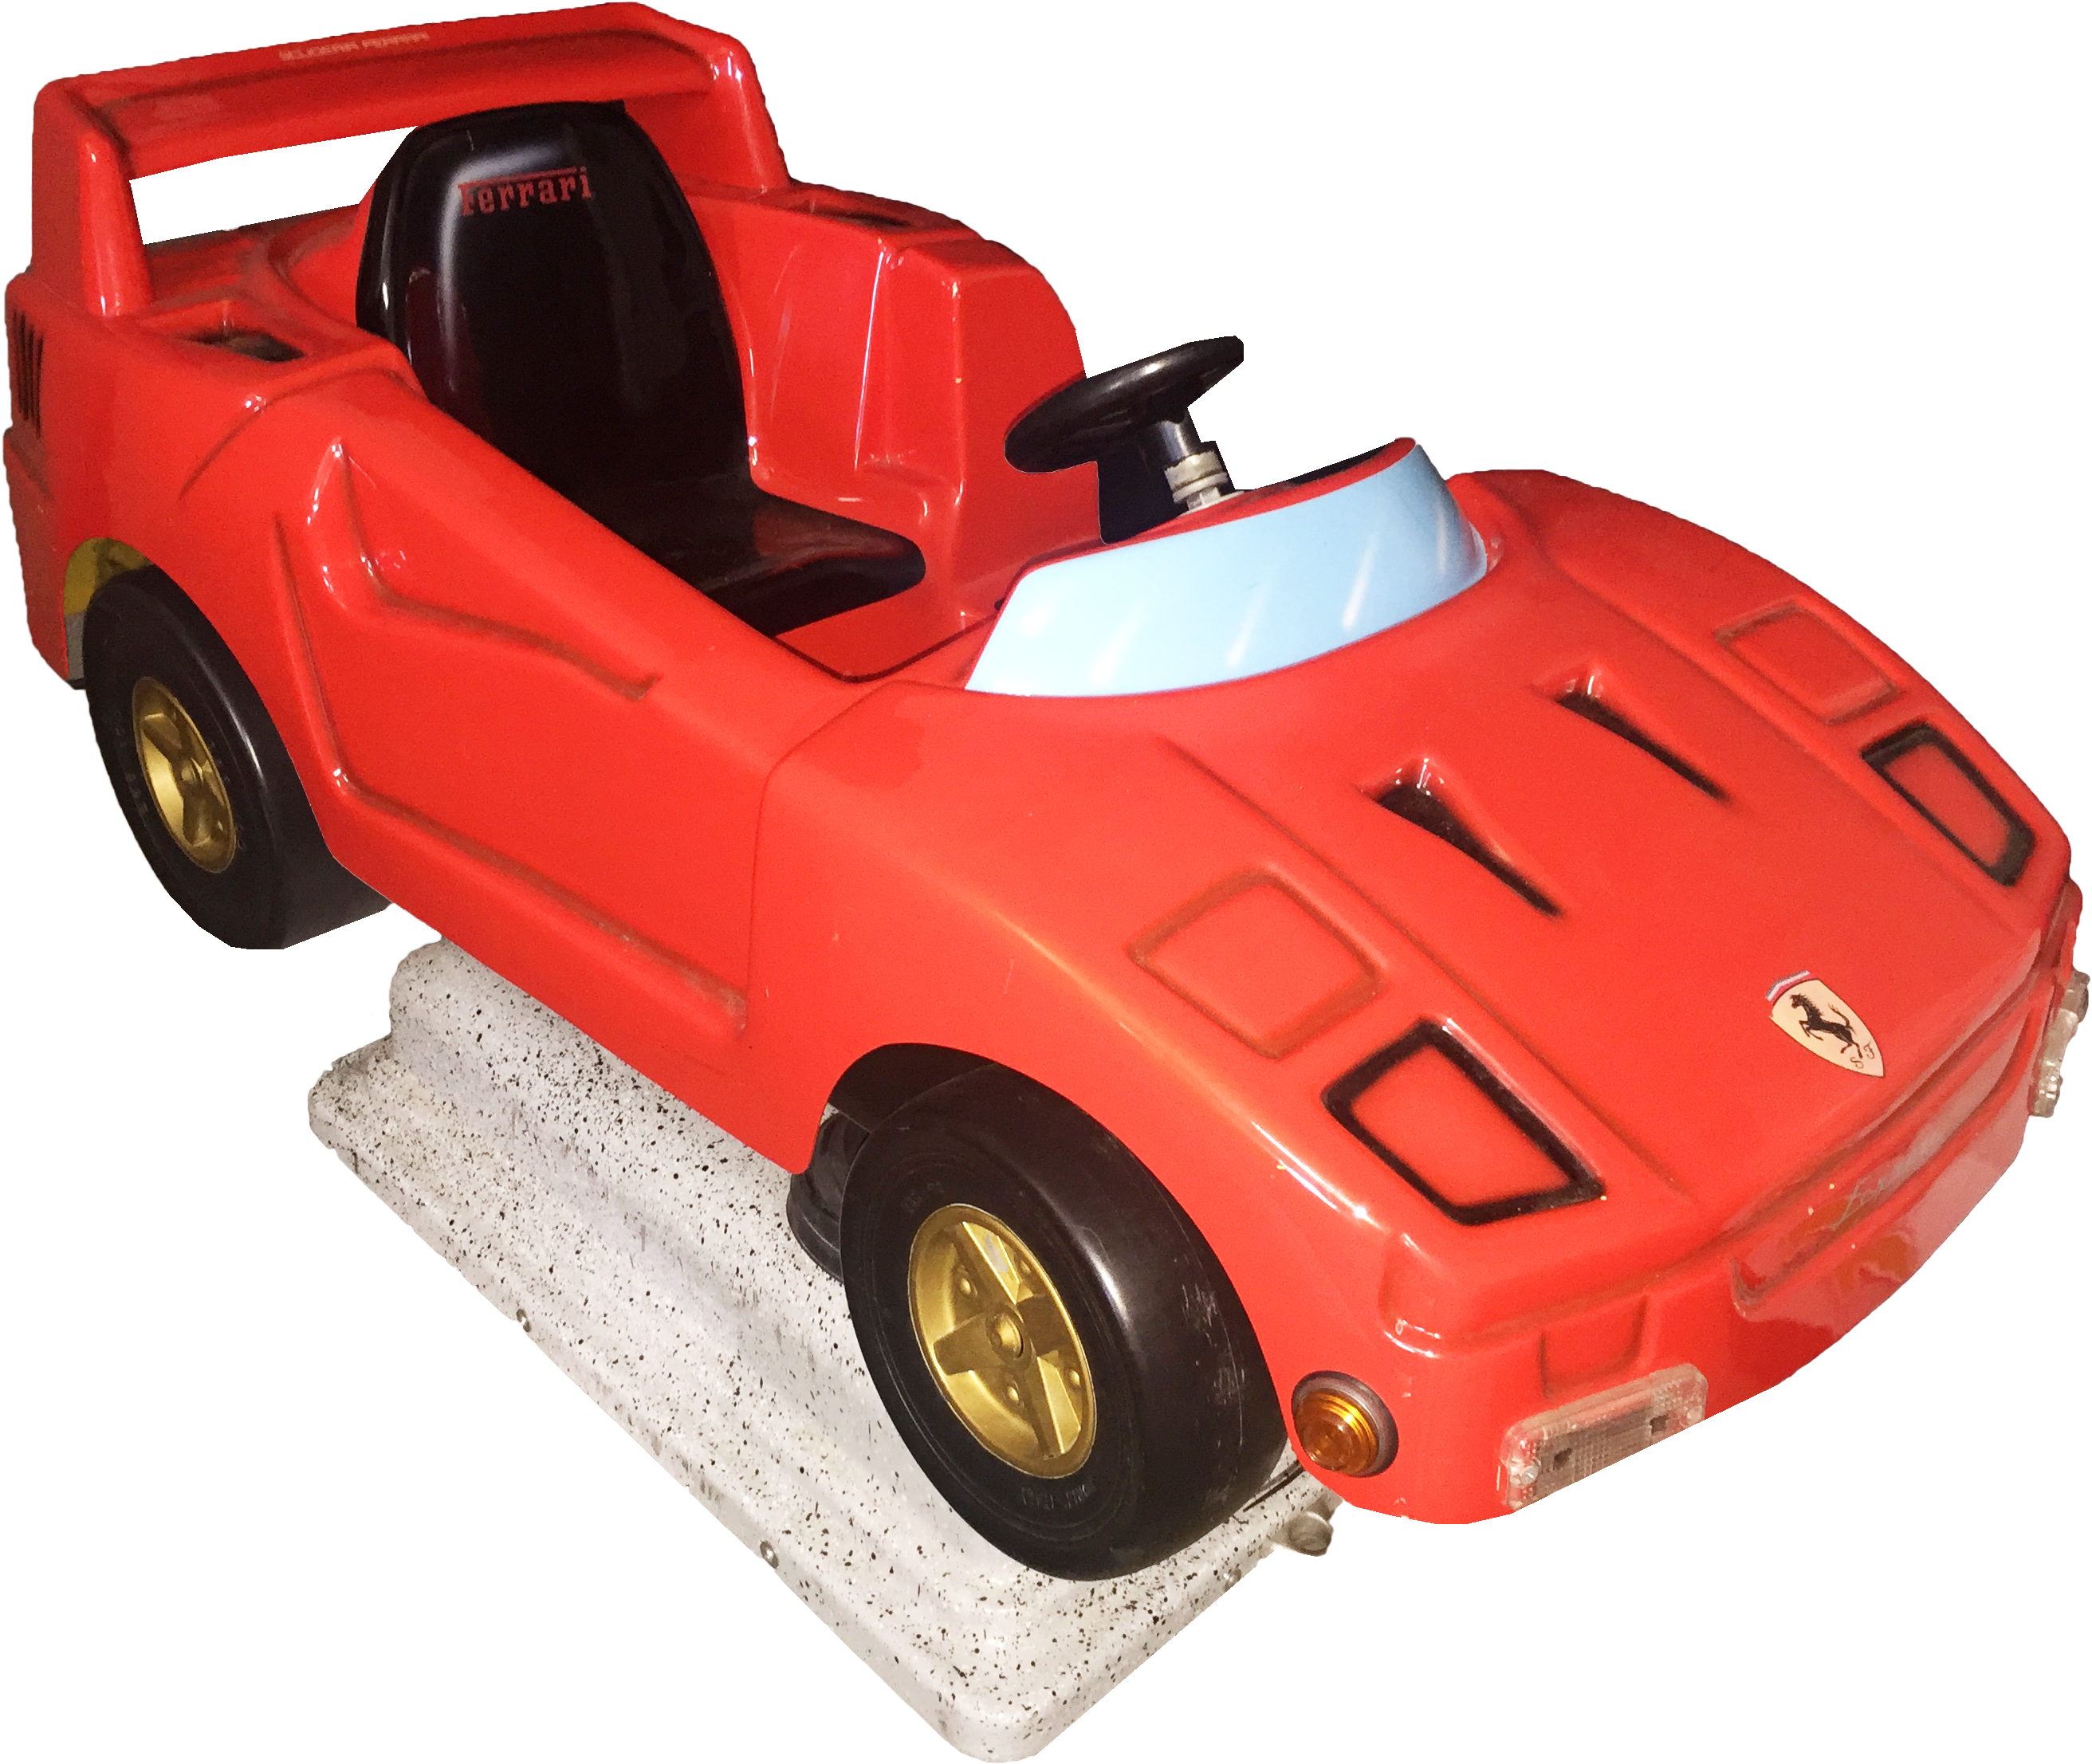 Ferrari - Model Car (3264x2448), Png Download